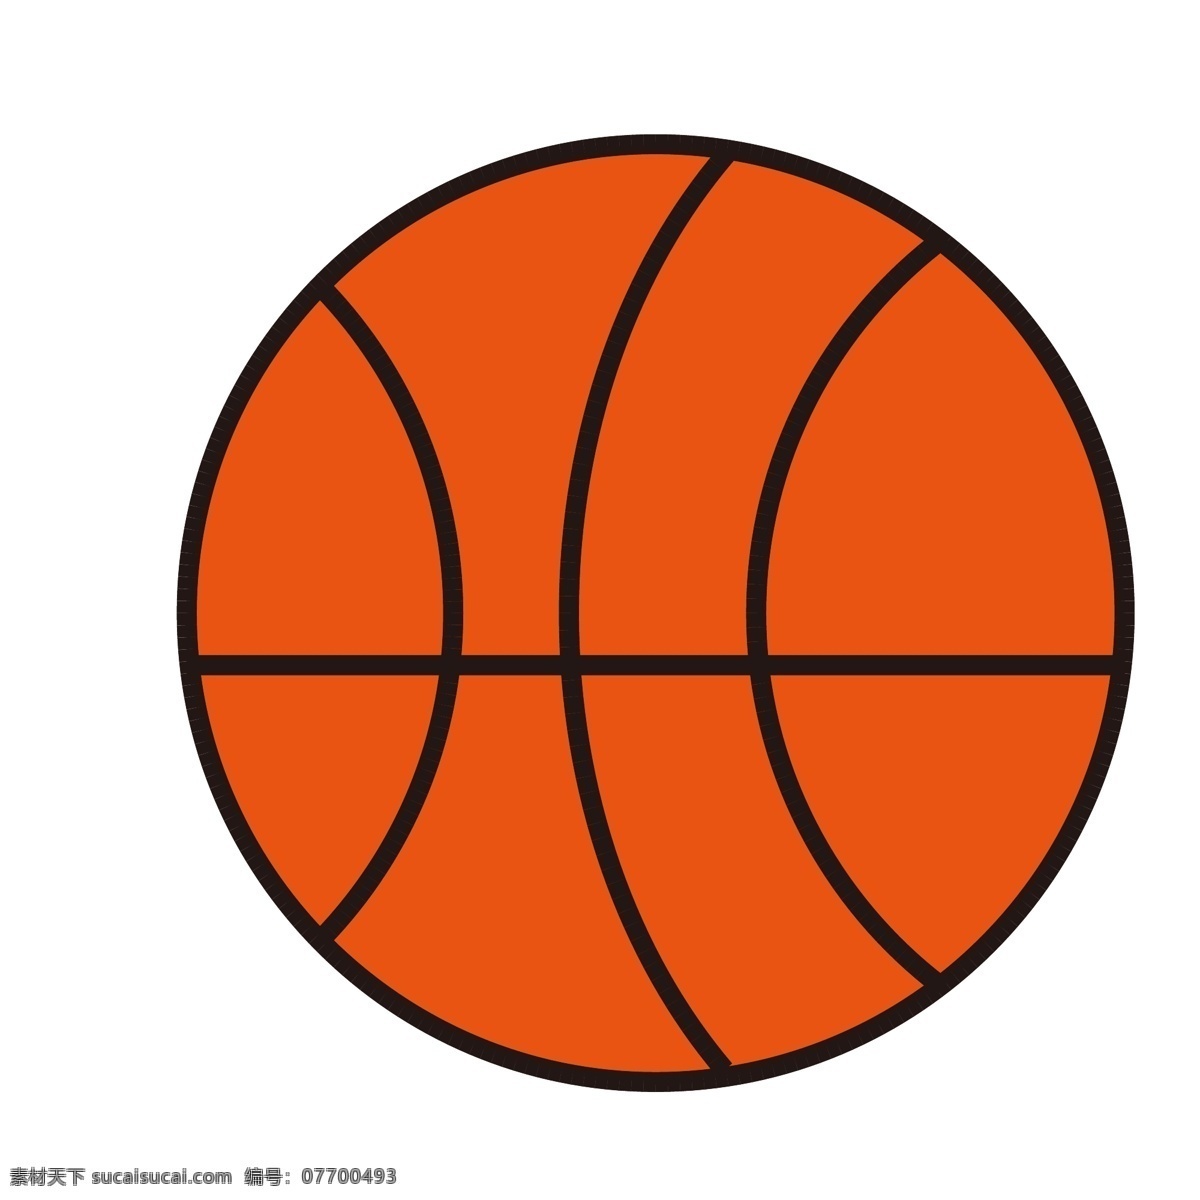 球场 球 球框 篮球框 篮球场 体育 篮球场馆 篮球素材 体育健身器材 扁平 矢量 图标 足球